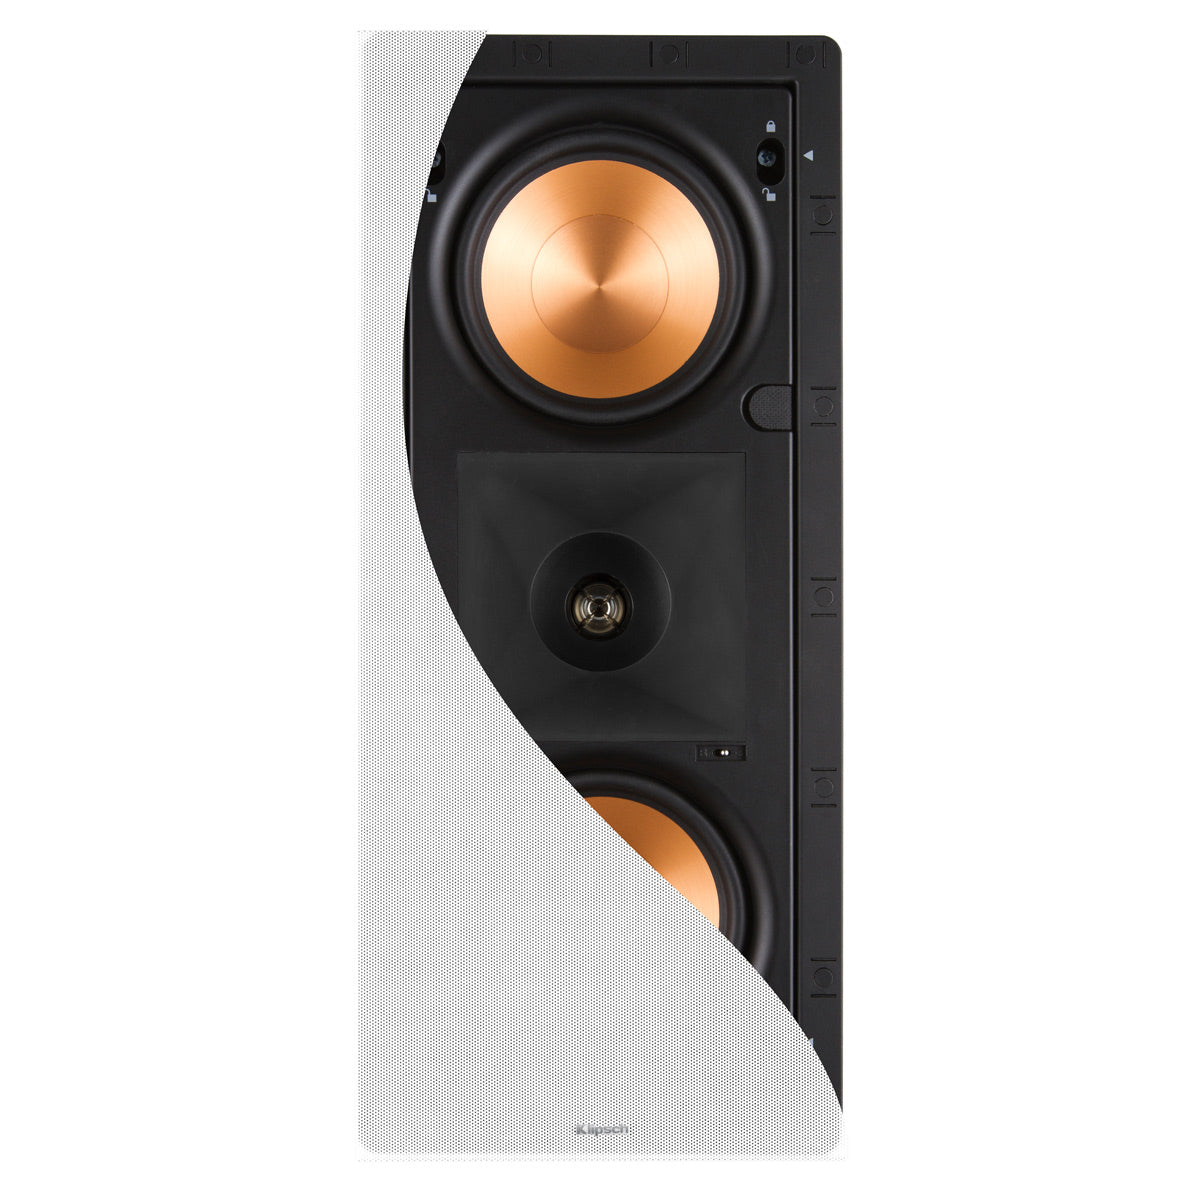 Klipsch PRO-250RPW LCR 5.25" In-Wall LCR Speaker - Each (White)